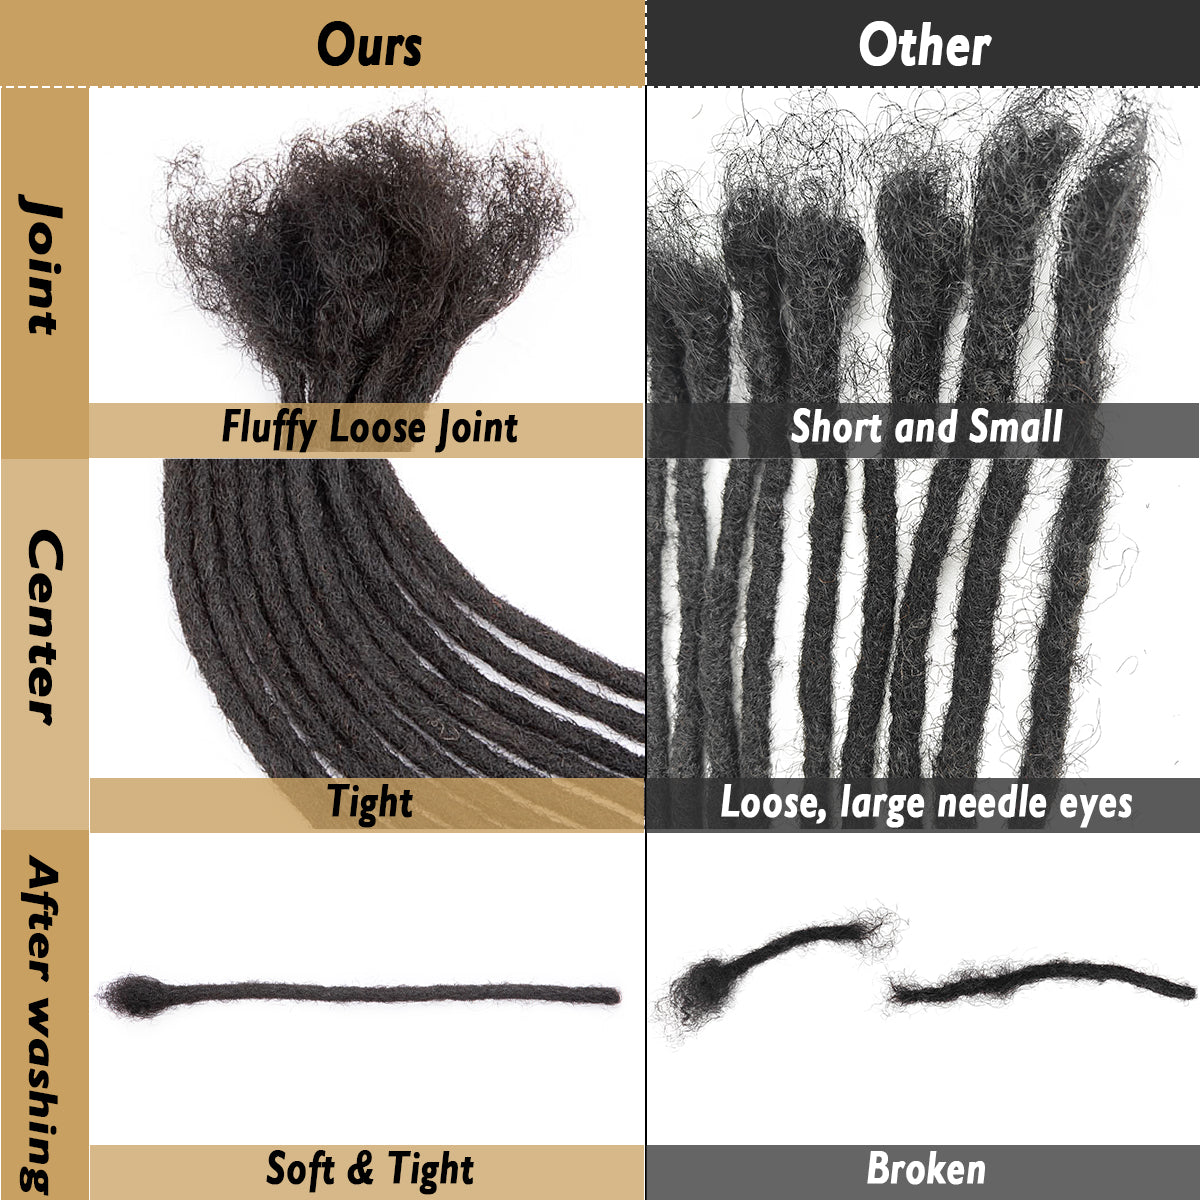 Bourgogne Dreads Extensions Bug # Cheveux Humains Dreadlocks 8 Pouces Locs Cheveux 0.4cm-0.8cm